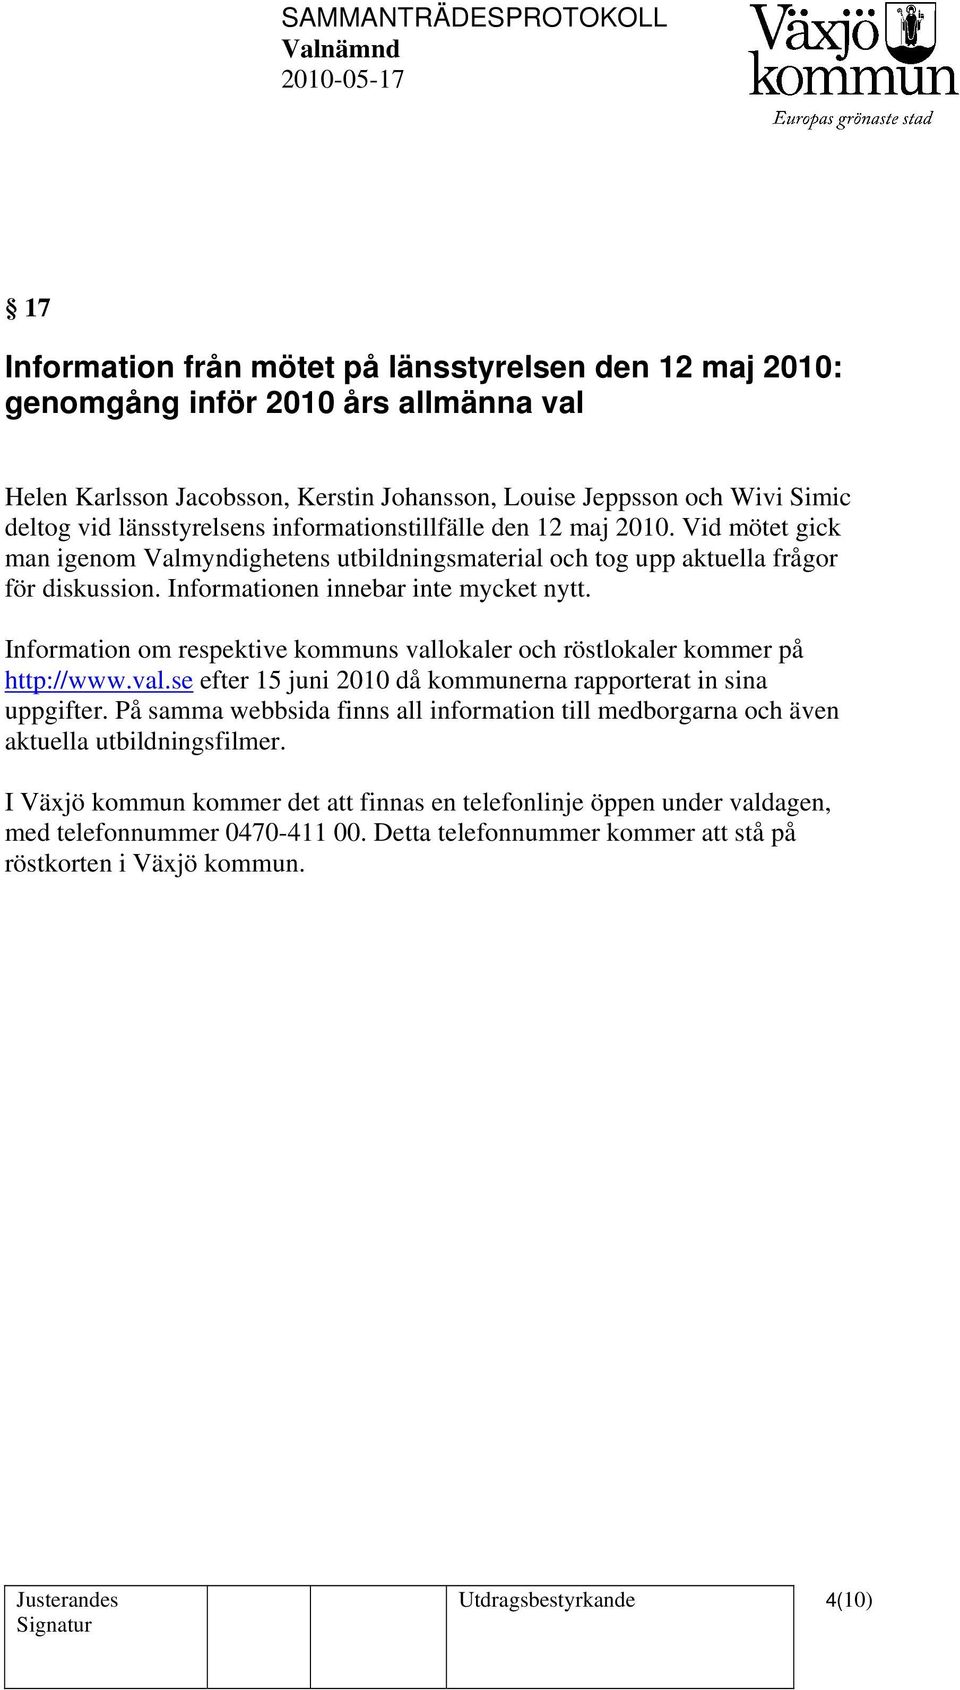 Information om respektive kommuns vallokaler och röstlokaler kommer på http://www.val.se efter 15 juni 2010 då kommunerna rapporterat in sina uppgifter.